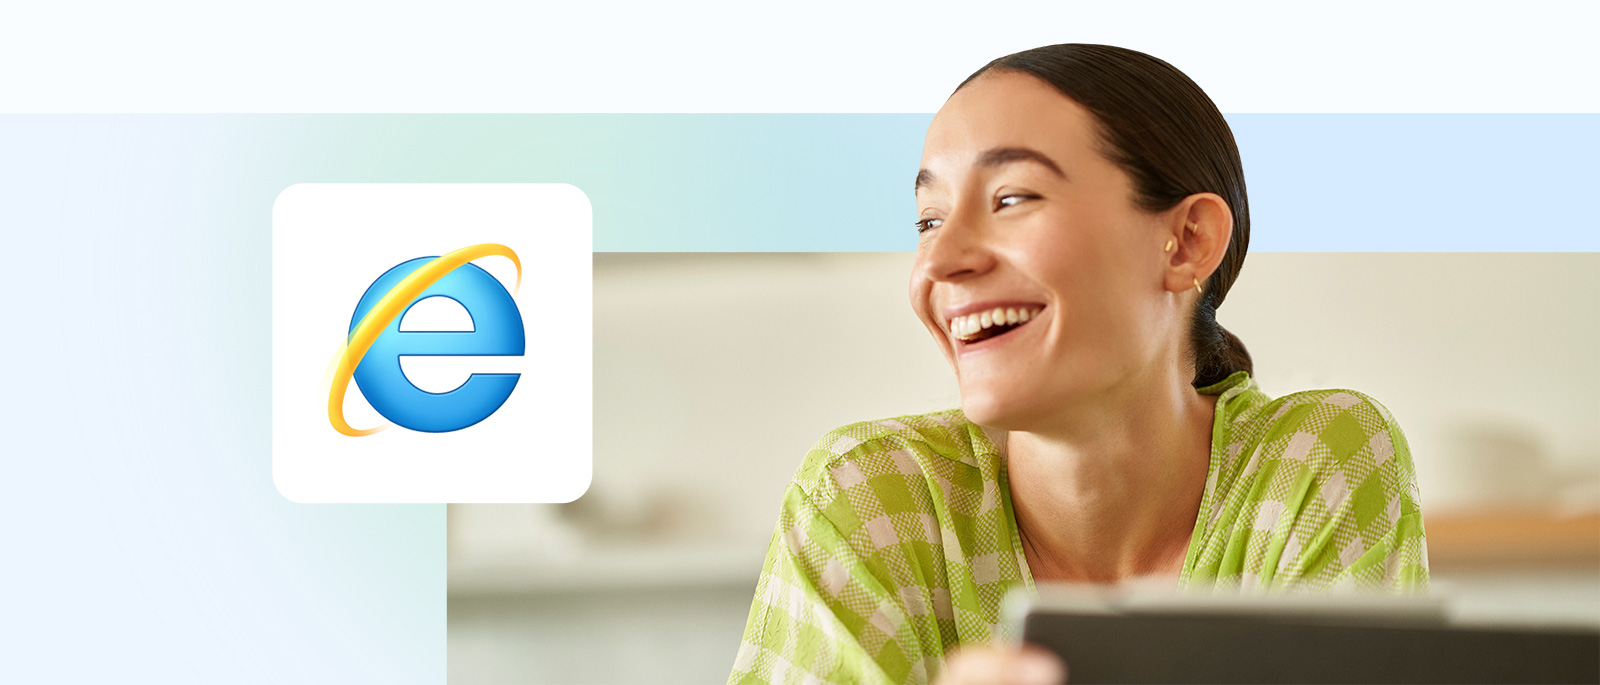 Una persona seduta davanti a un portatile sorride, in primo piano l'icona di Internet Explorer.